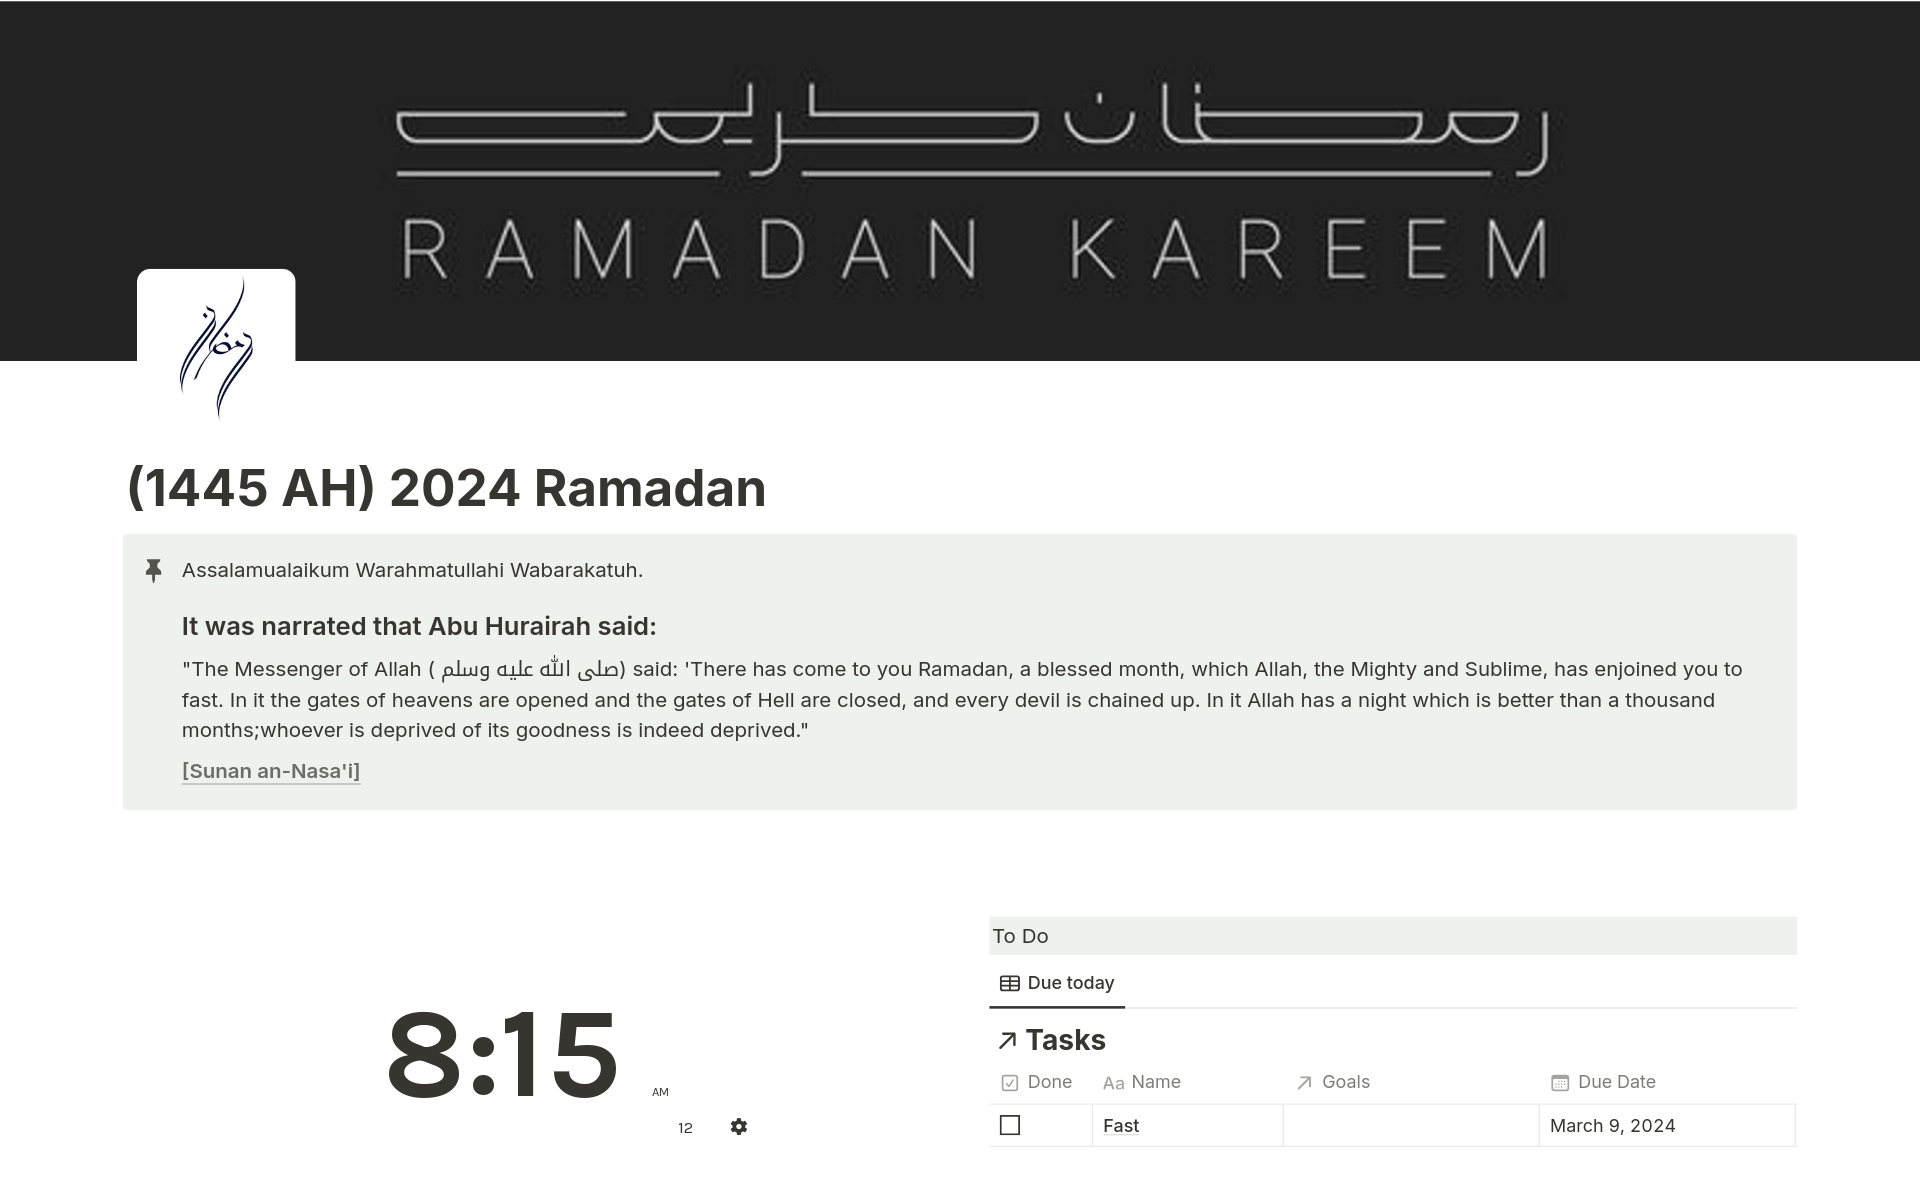 (1445 AH) 2024 Ramadanのテンプレートのプレビュー